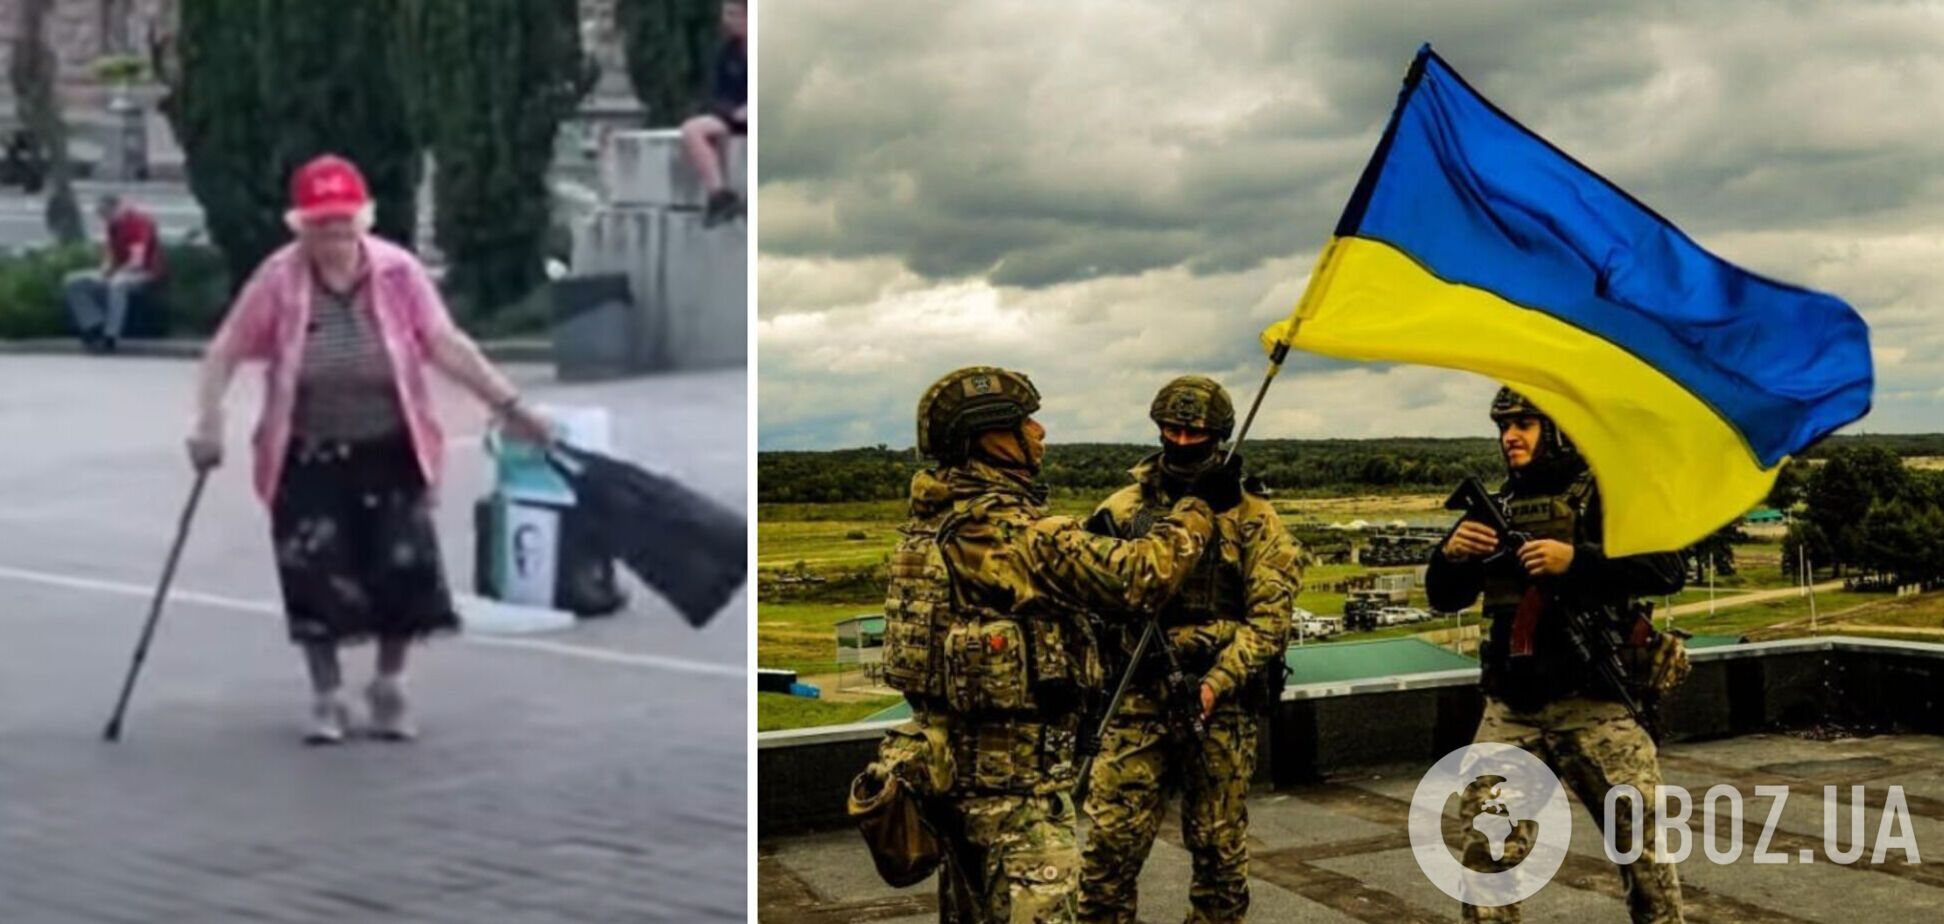 Мережу підірвало відео, як бабуся в центрі Києва 'запалює' під хіт 'Допоможе ЗСУ'